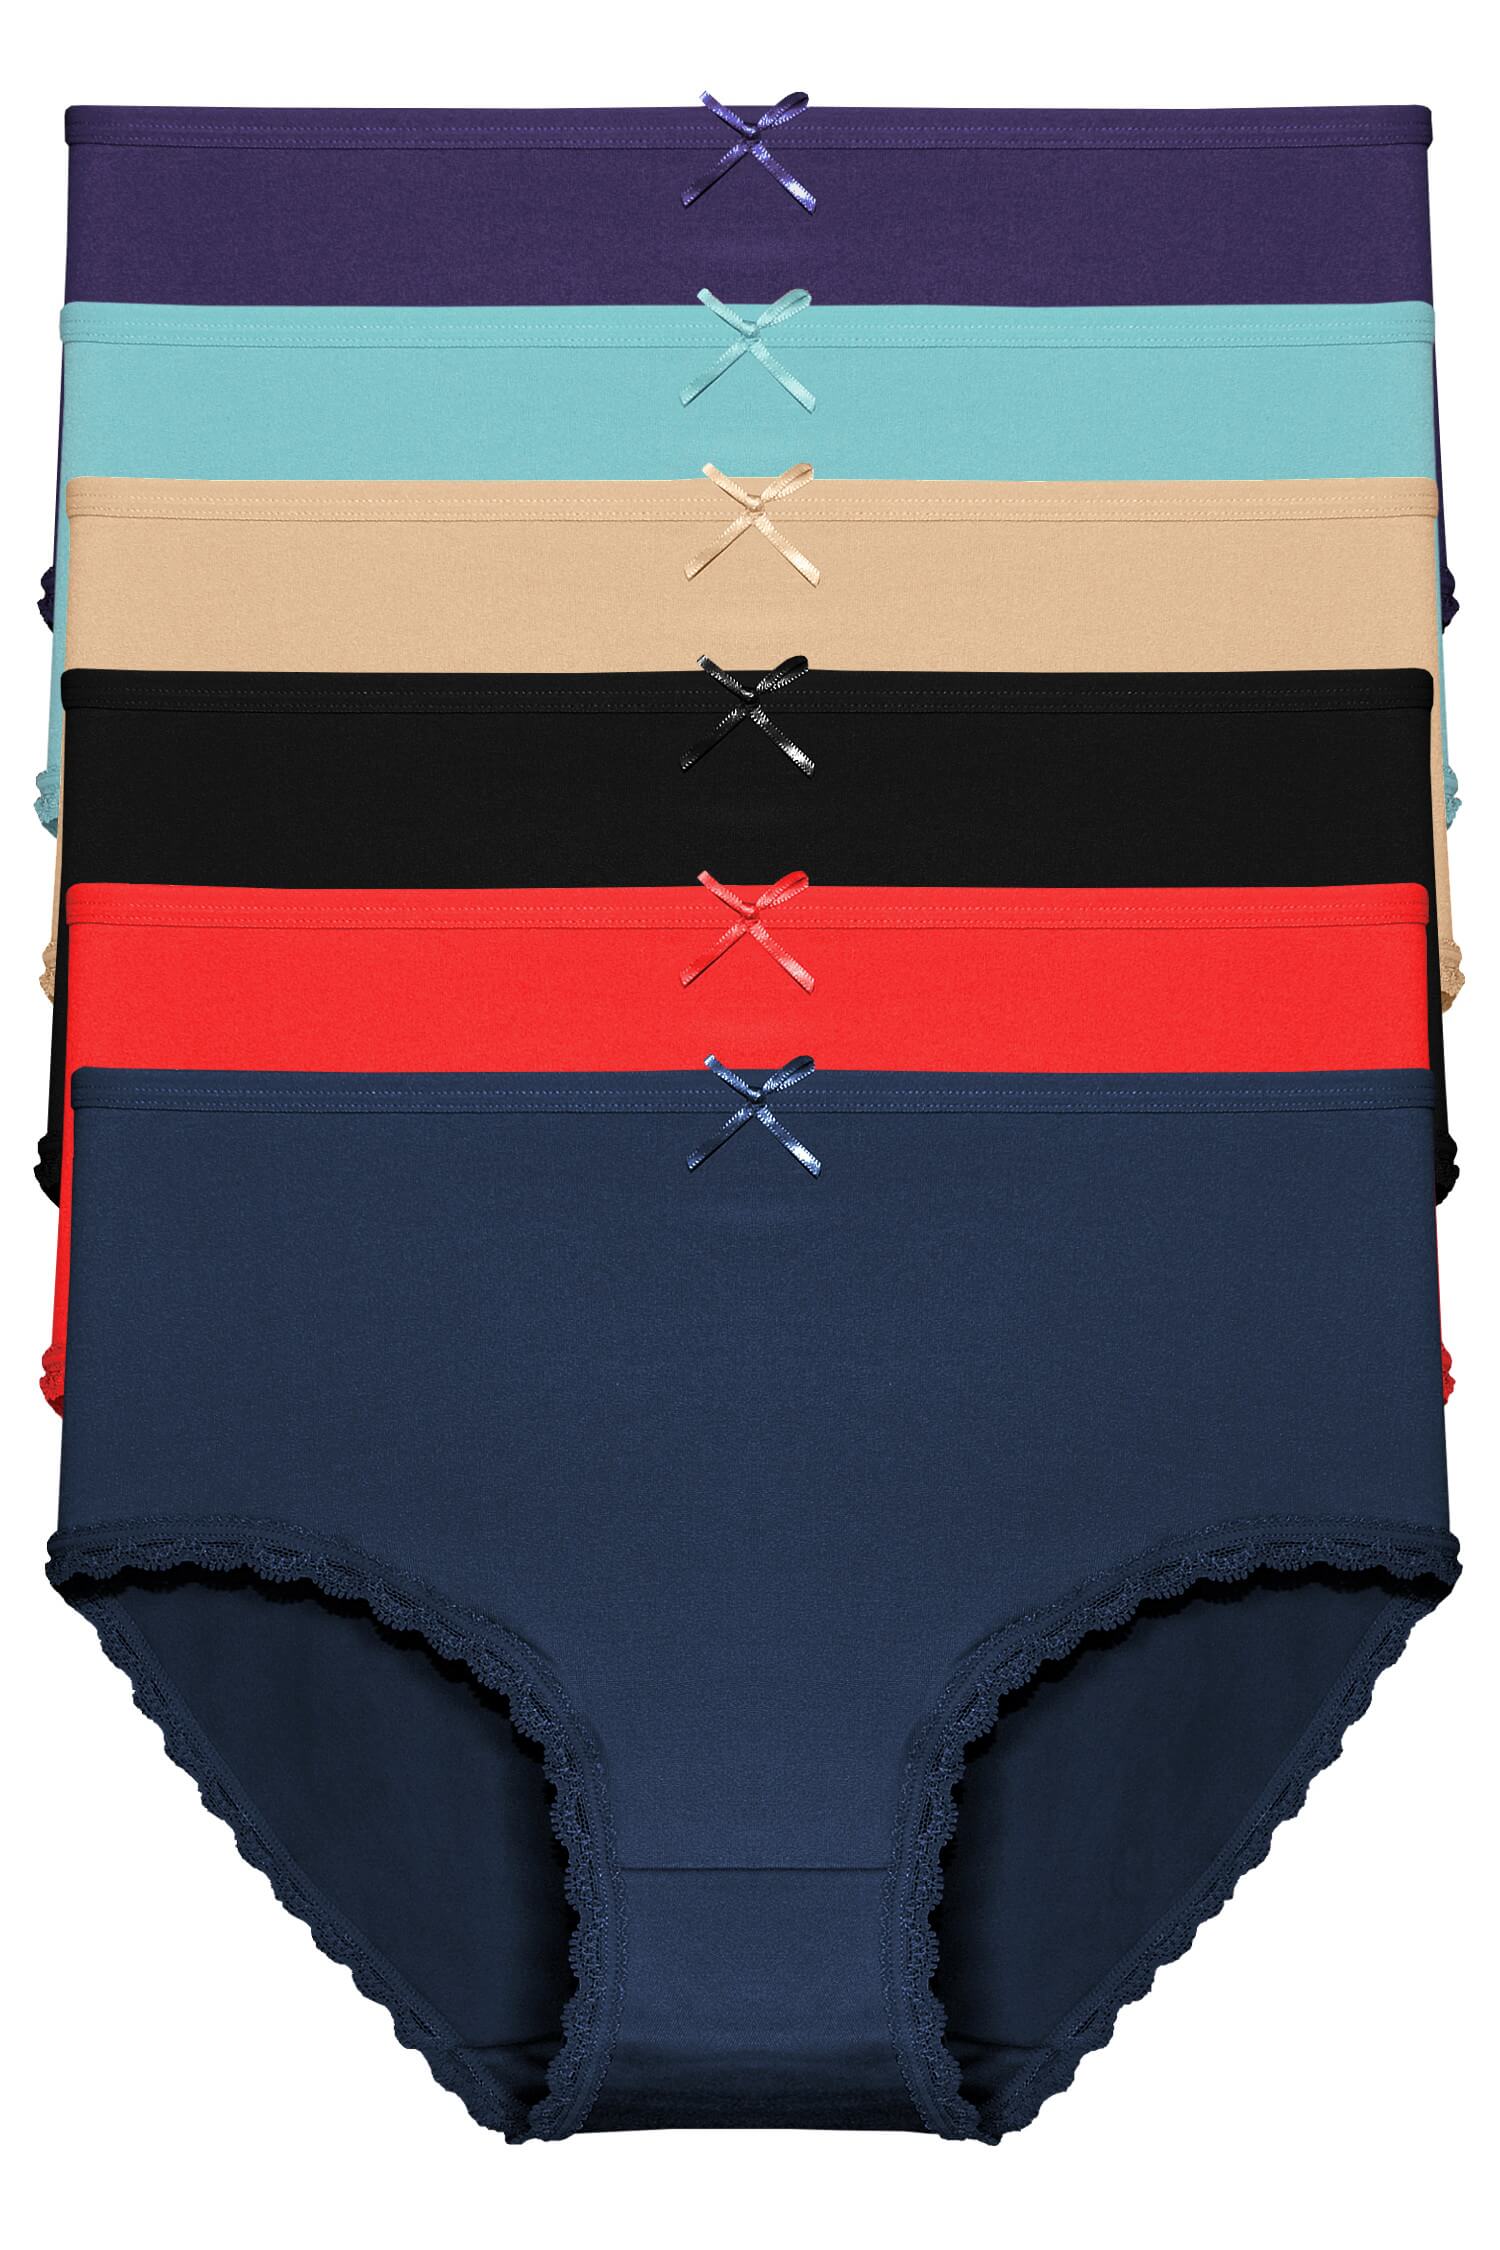 Ariela klasické kalhotky s krajkou 9075 - 3bal vícebarevná L